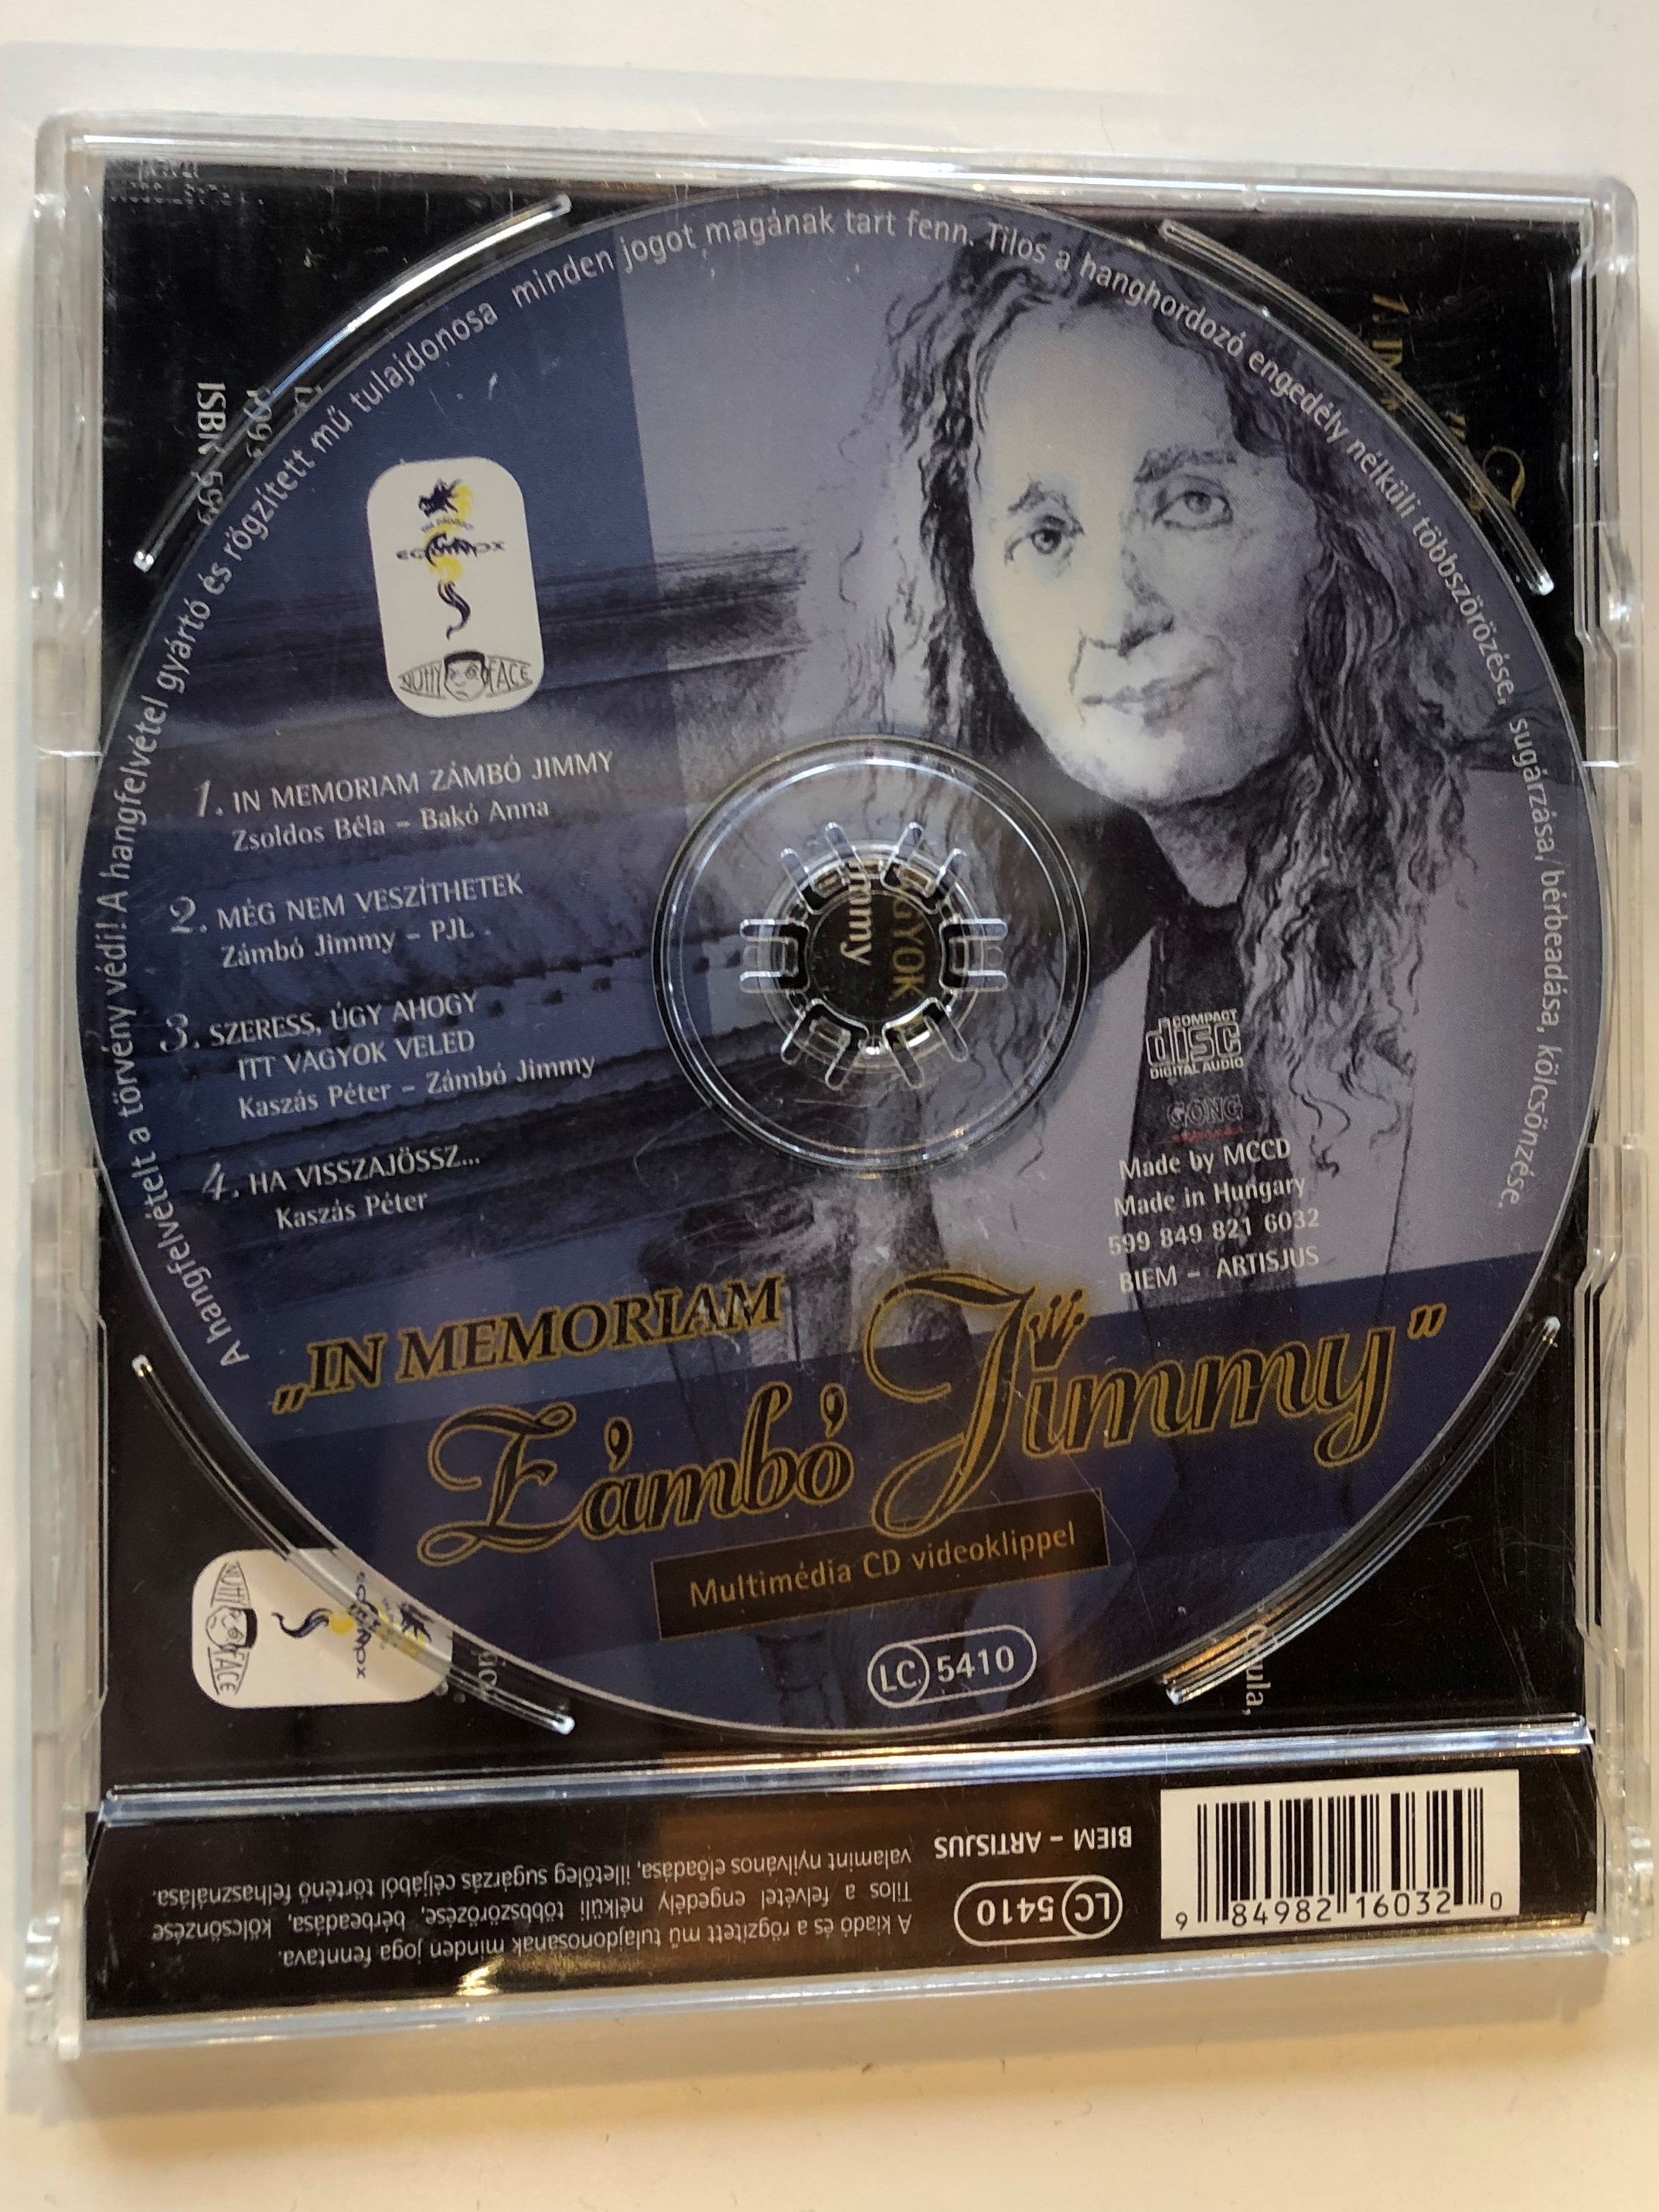 -in-memoriam-z-mb-jimmy-multimedia-cd-videoklippel-equinox-audio-cd-599-849-821-6032-2-.jpg